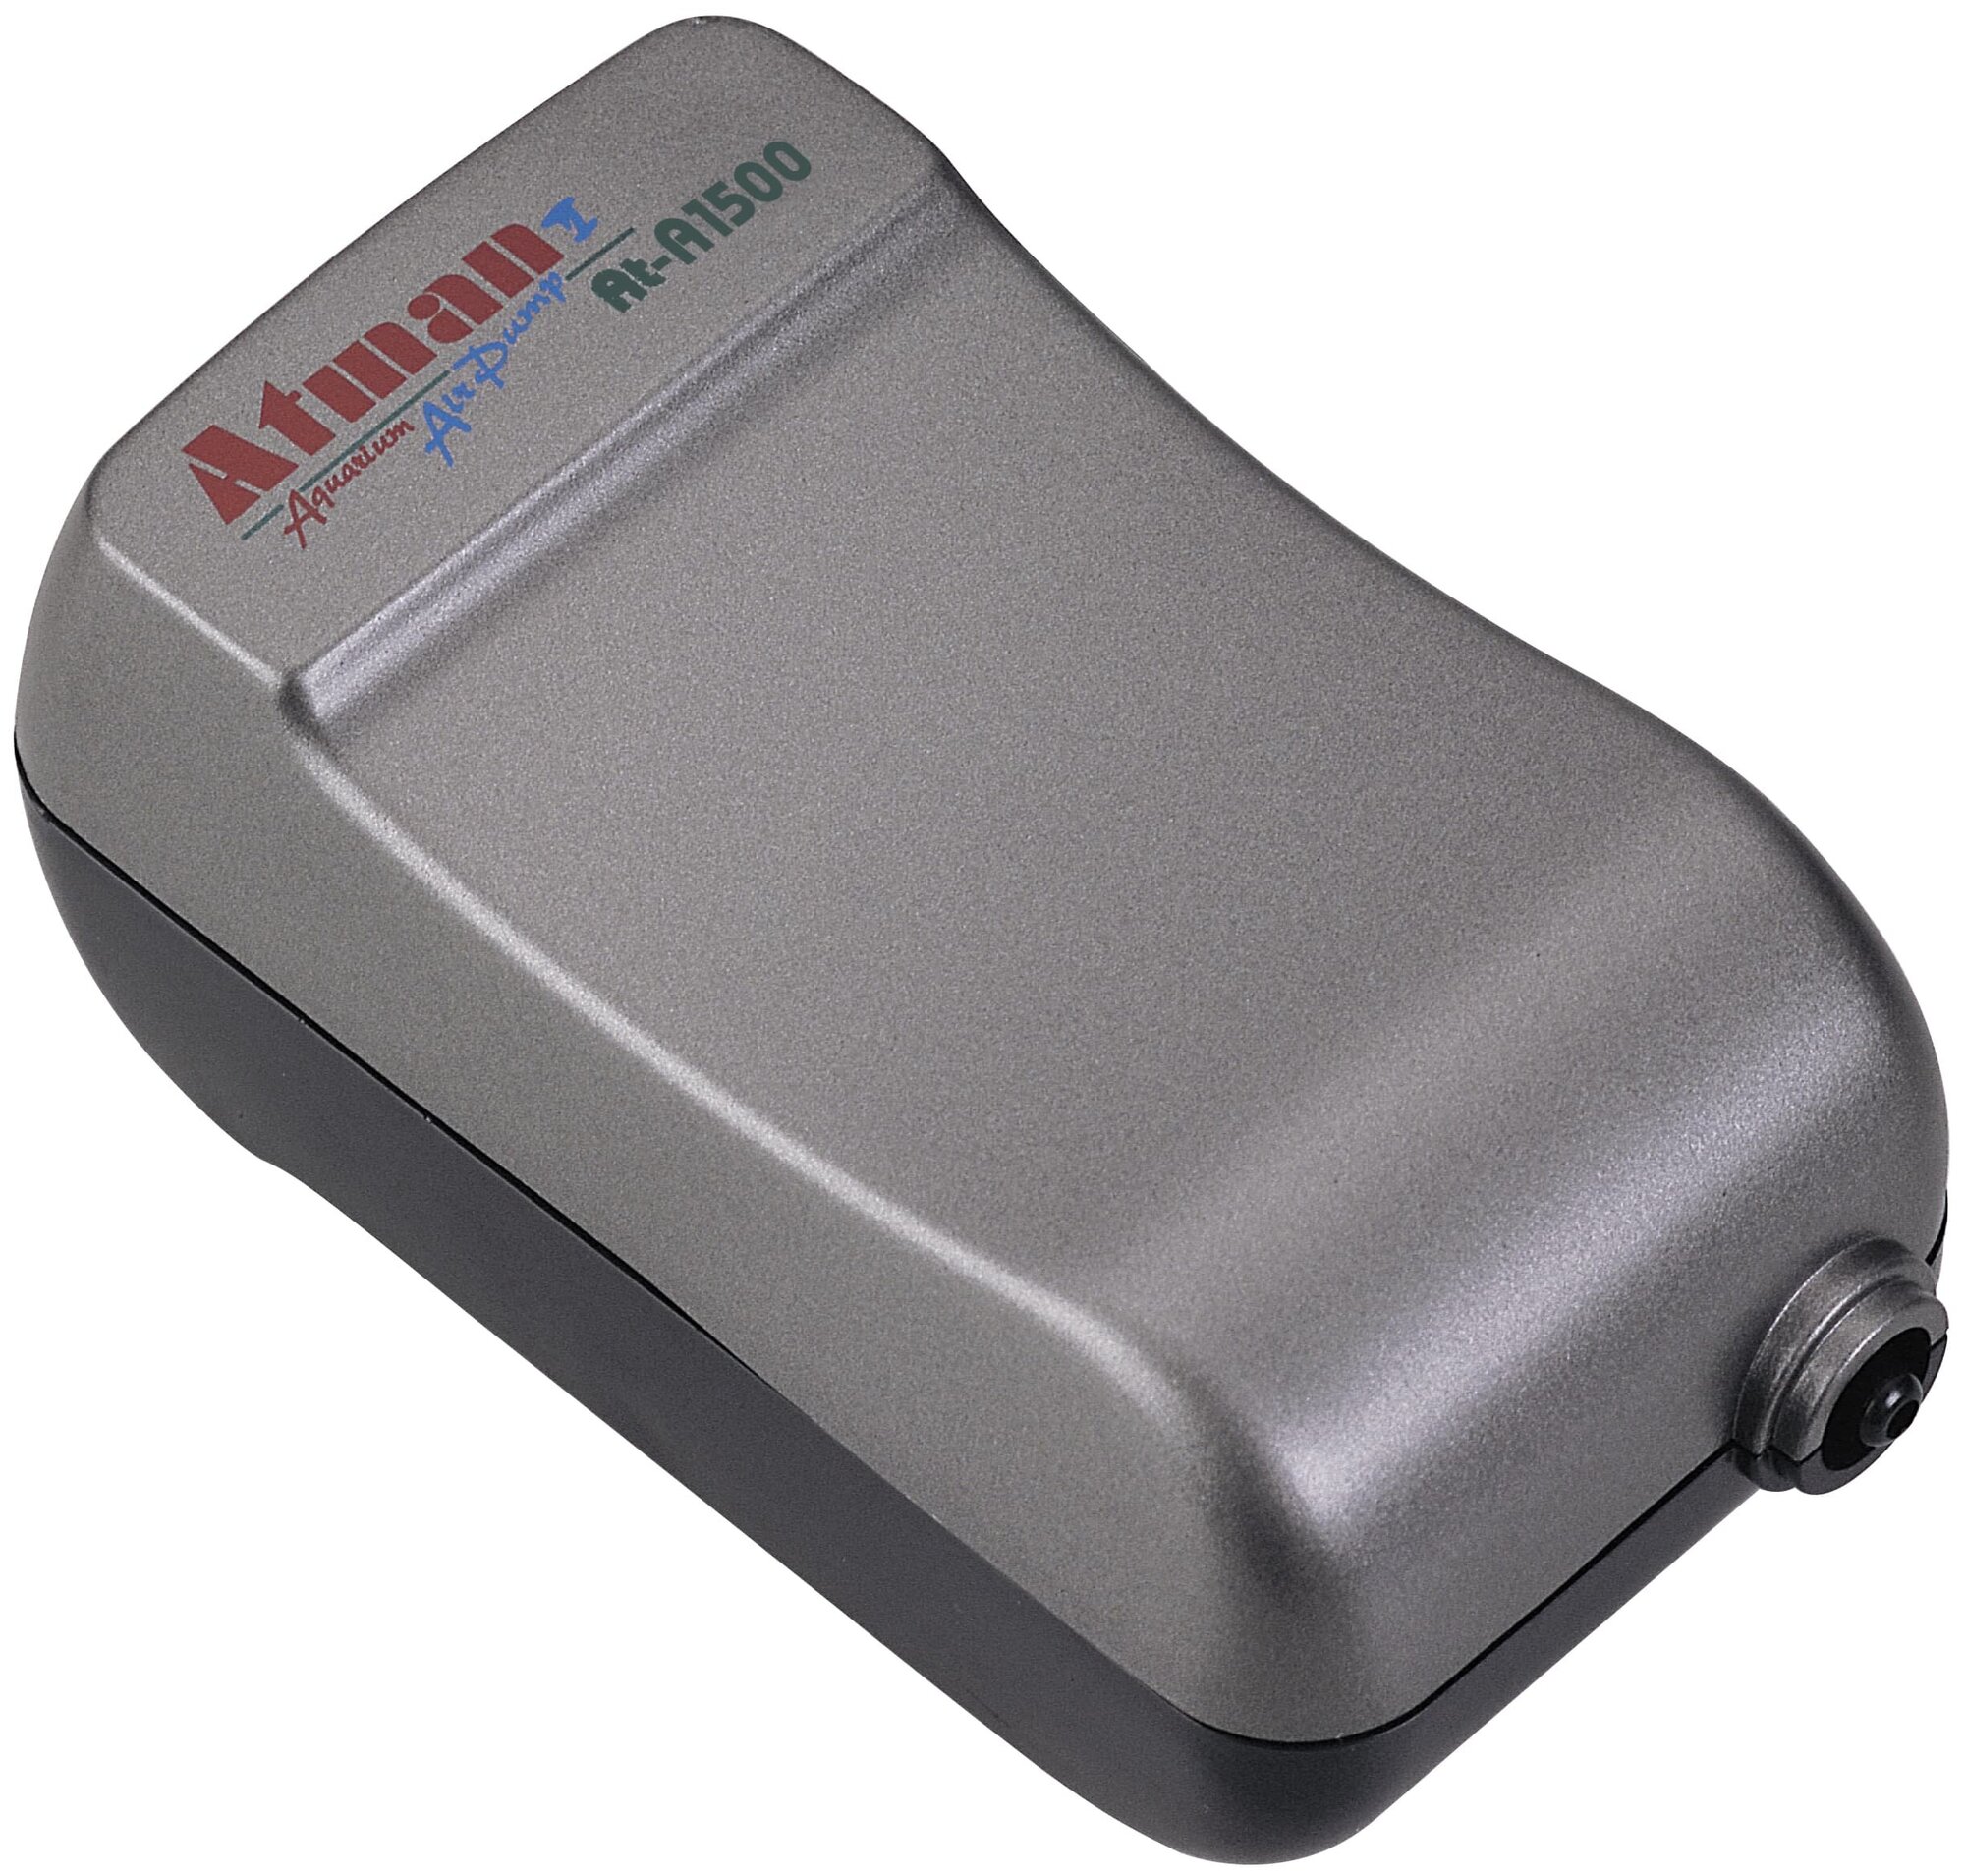 Компрессор Atman AT-A1500 одноканальный нерегулируемый 90 л/ч (1 шт)